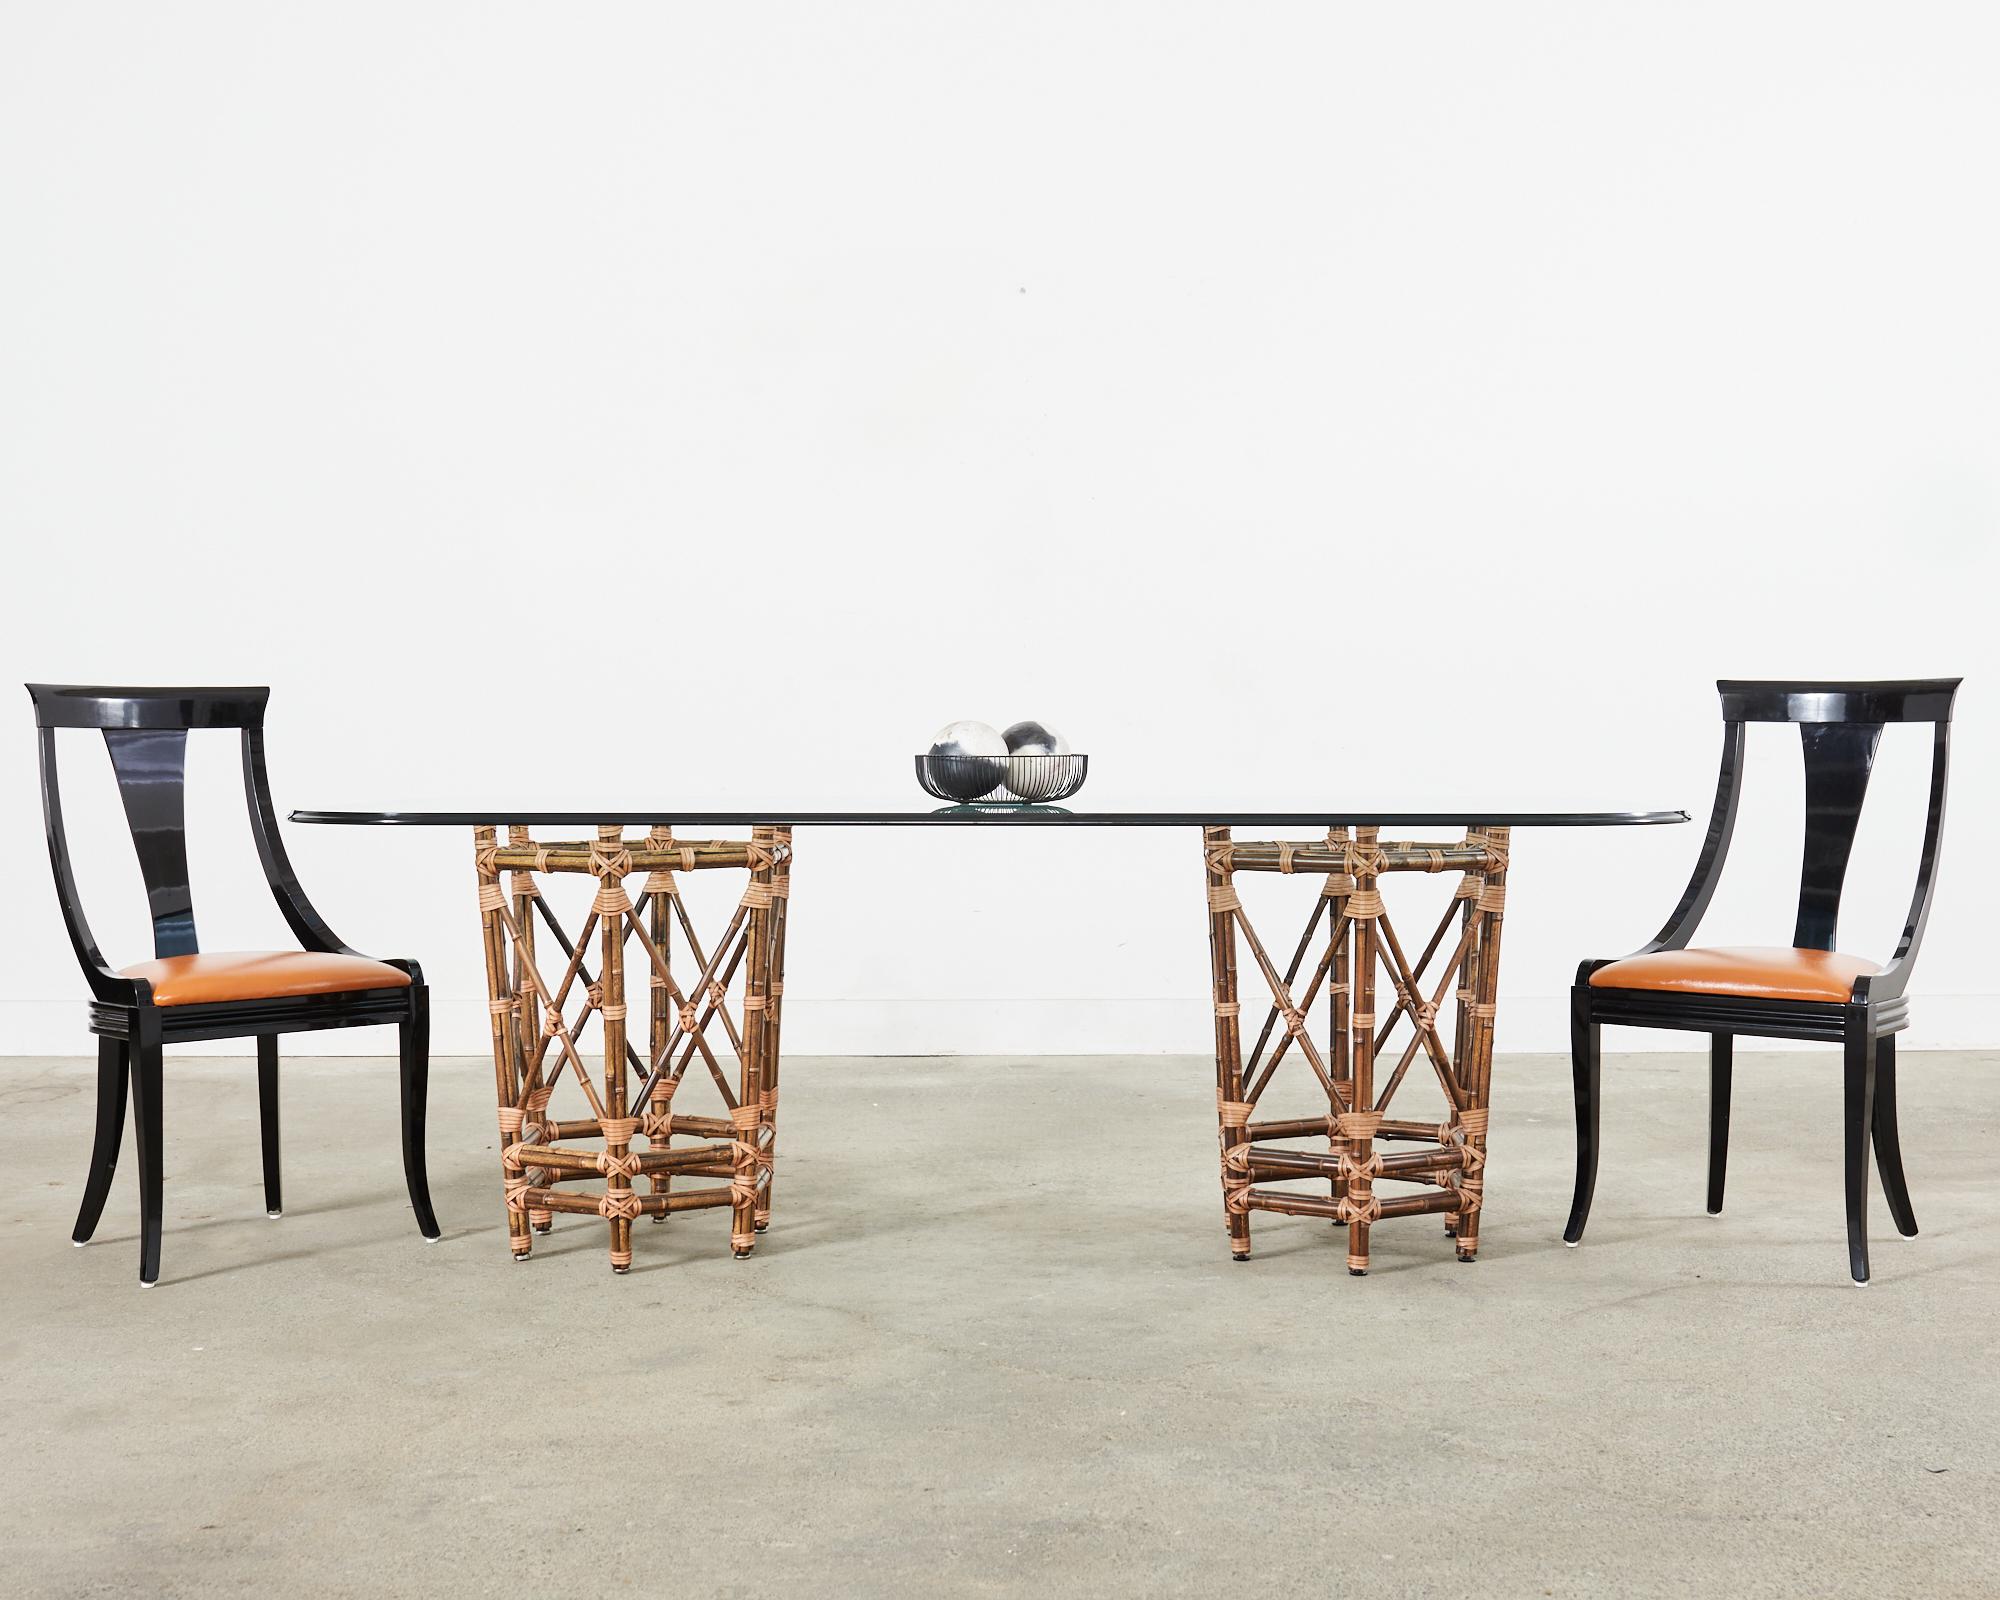 Ensemble spectaculaire de six chaises de salle à manger italiennes de style gondole, conçues par Pietro Costantini à San Vito al Torre, en Italie. Les chaises présentent une finition piano laquée noire sur les cadres sculpturaux en bois de style